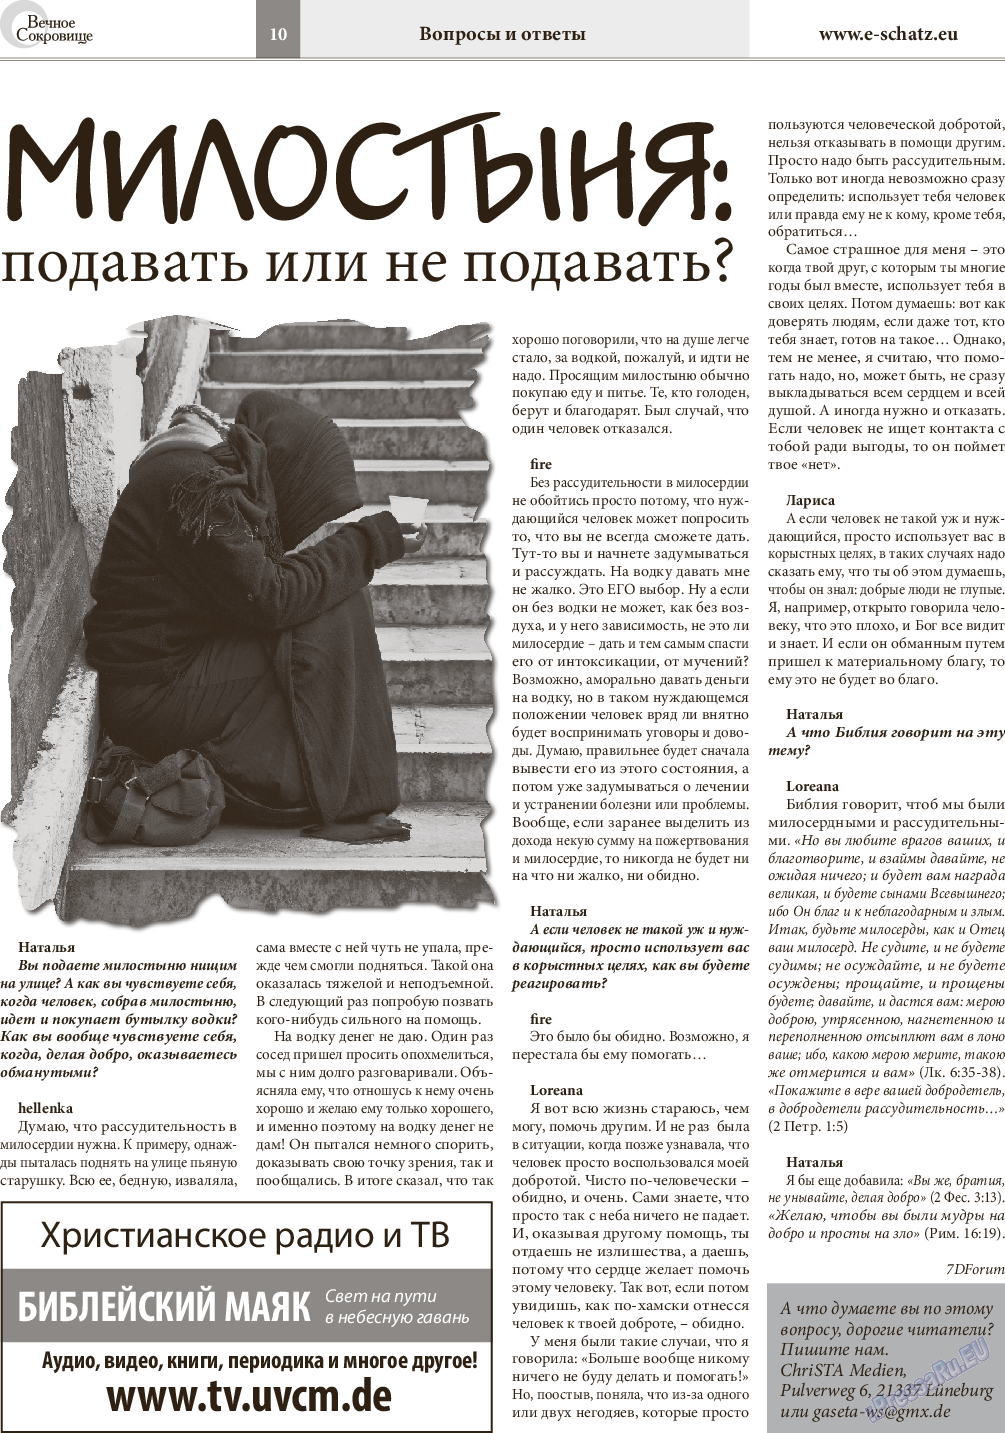 Вечное сокровище, газета. 2015 №5 стр.10